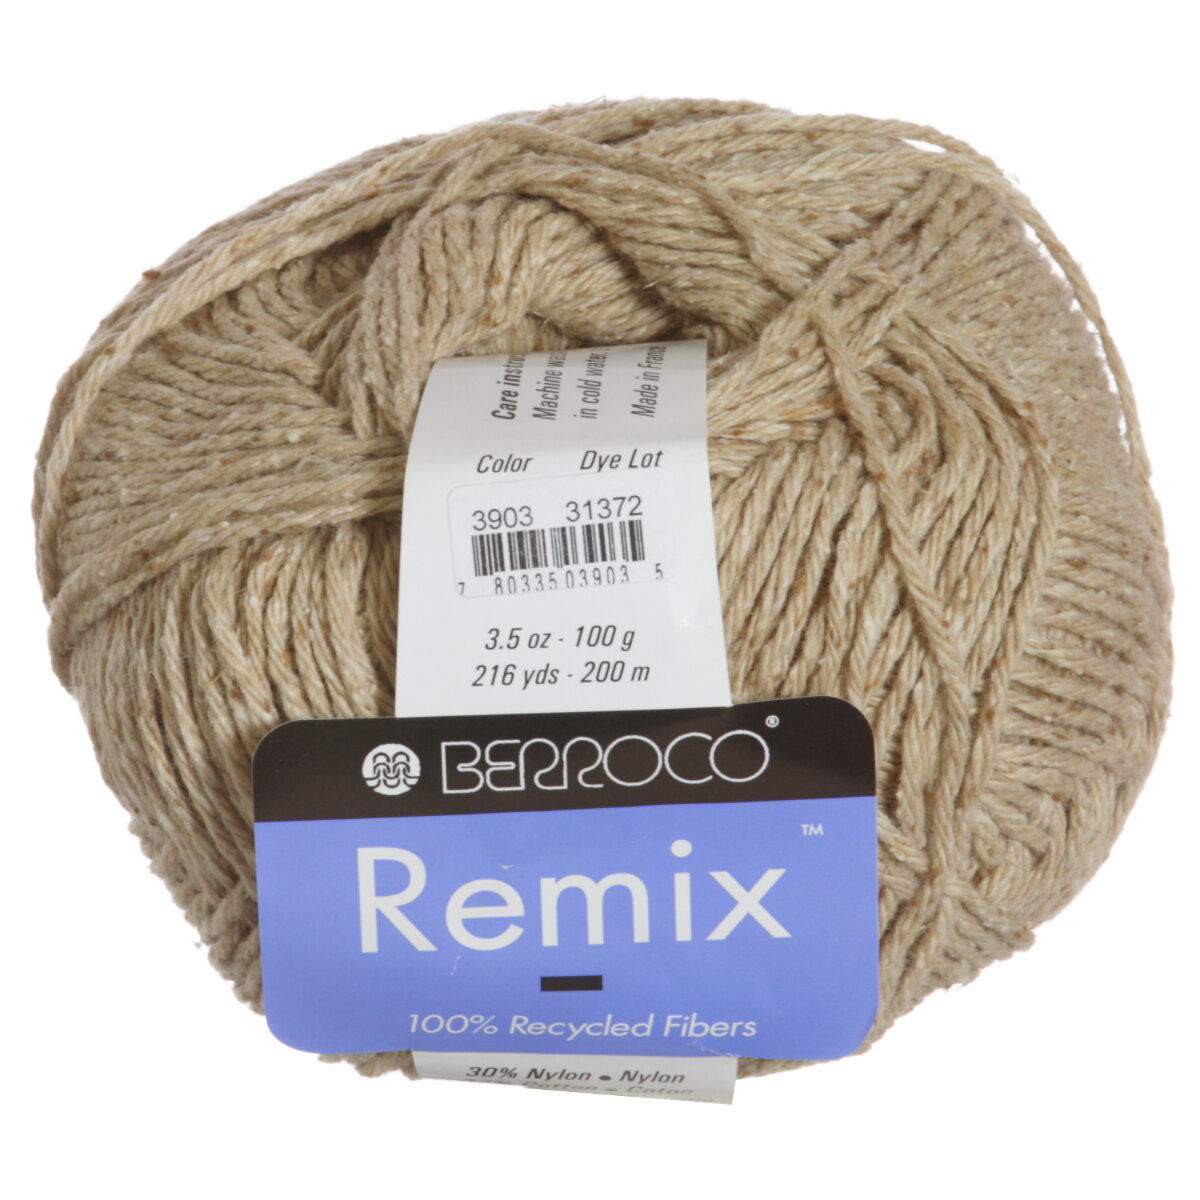 Berroco Remix Yarn - 3903 Almond at Jimmy Beans Wool